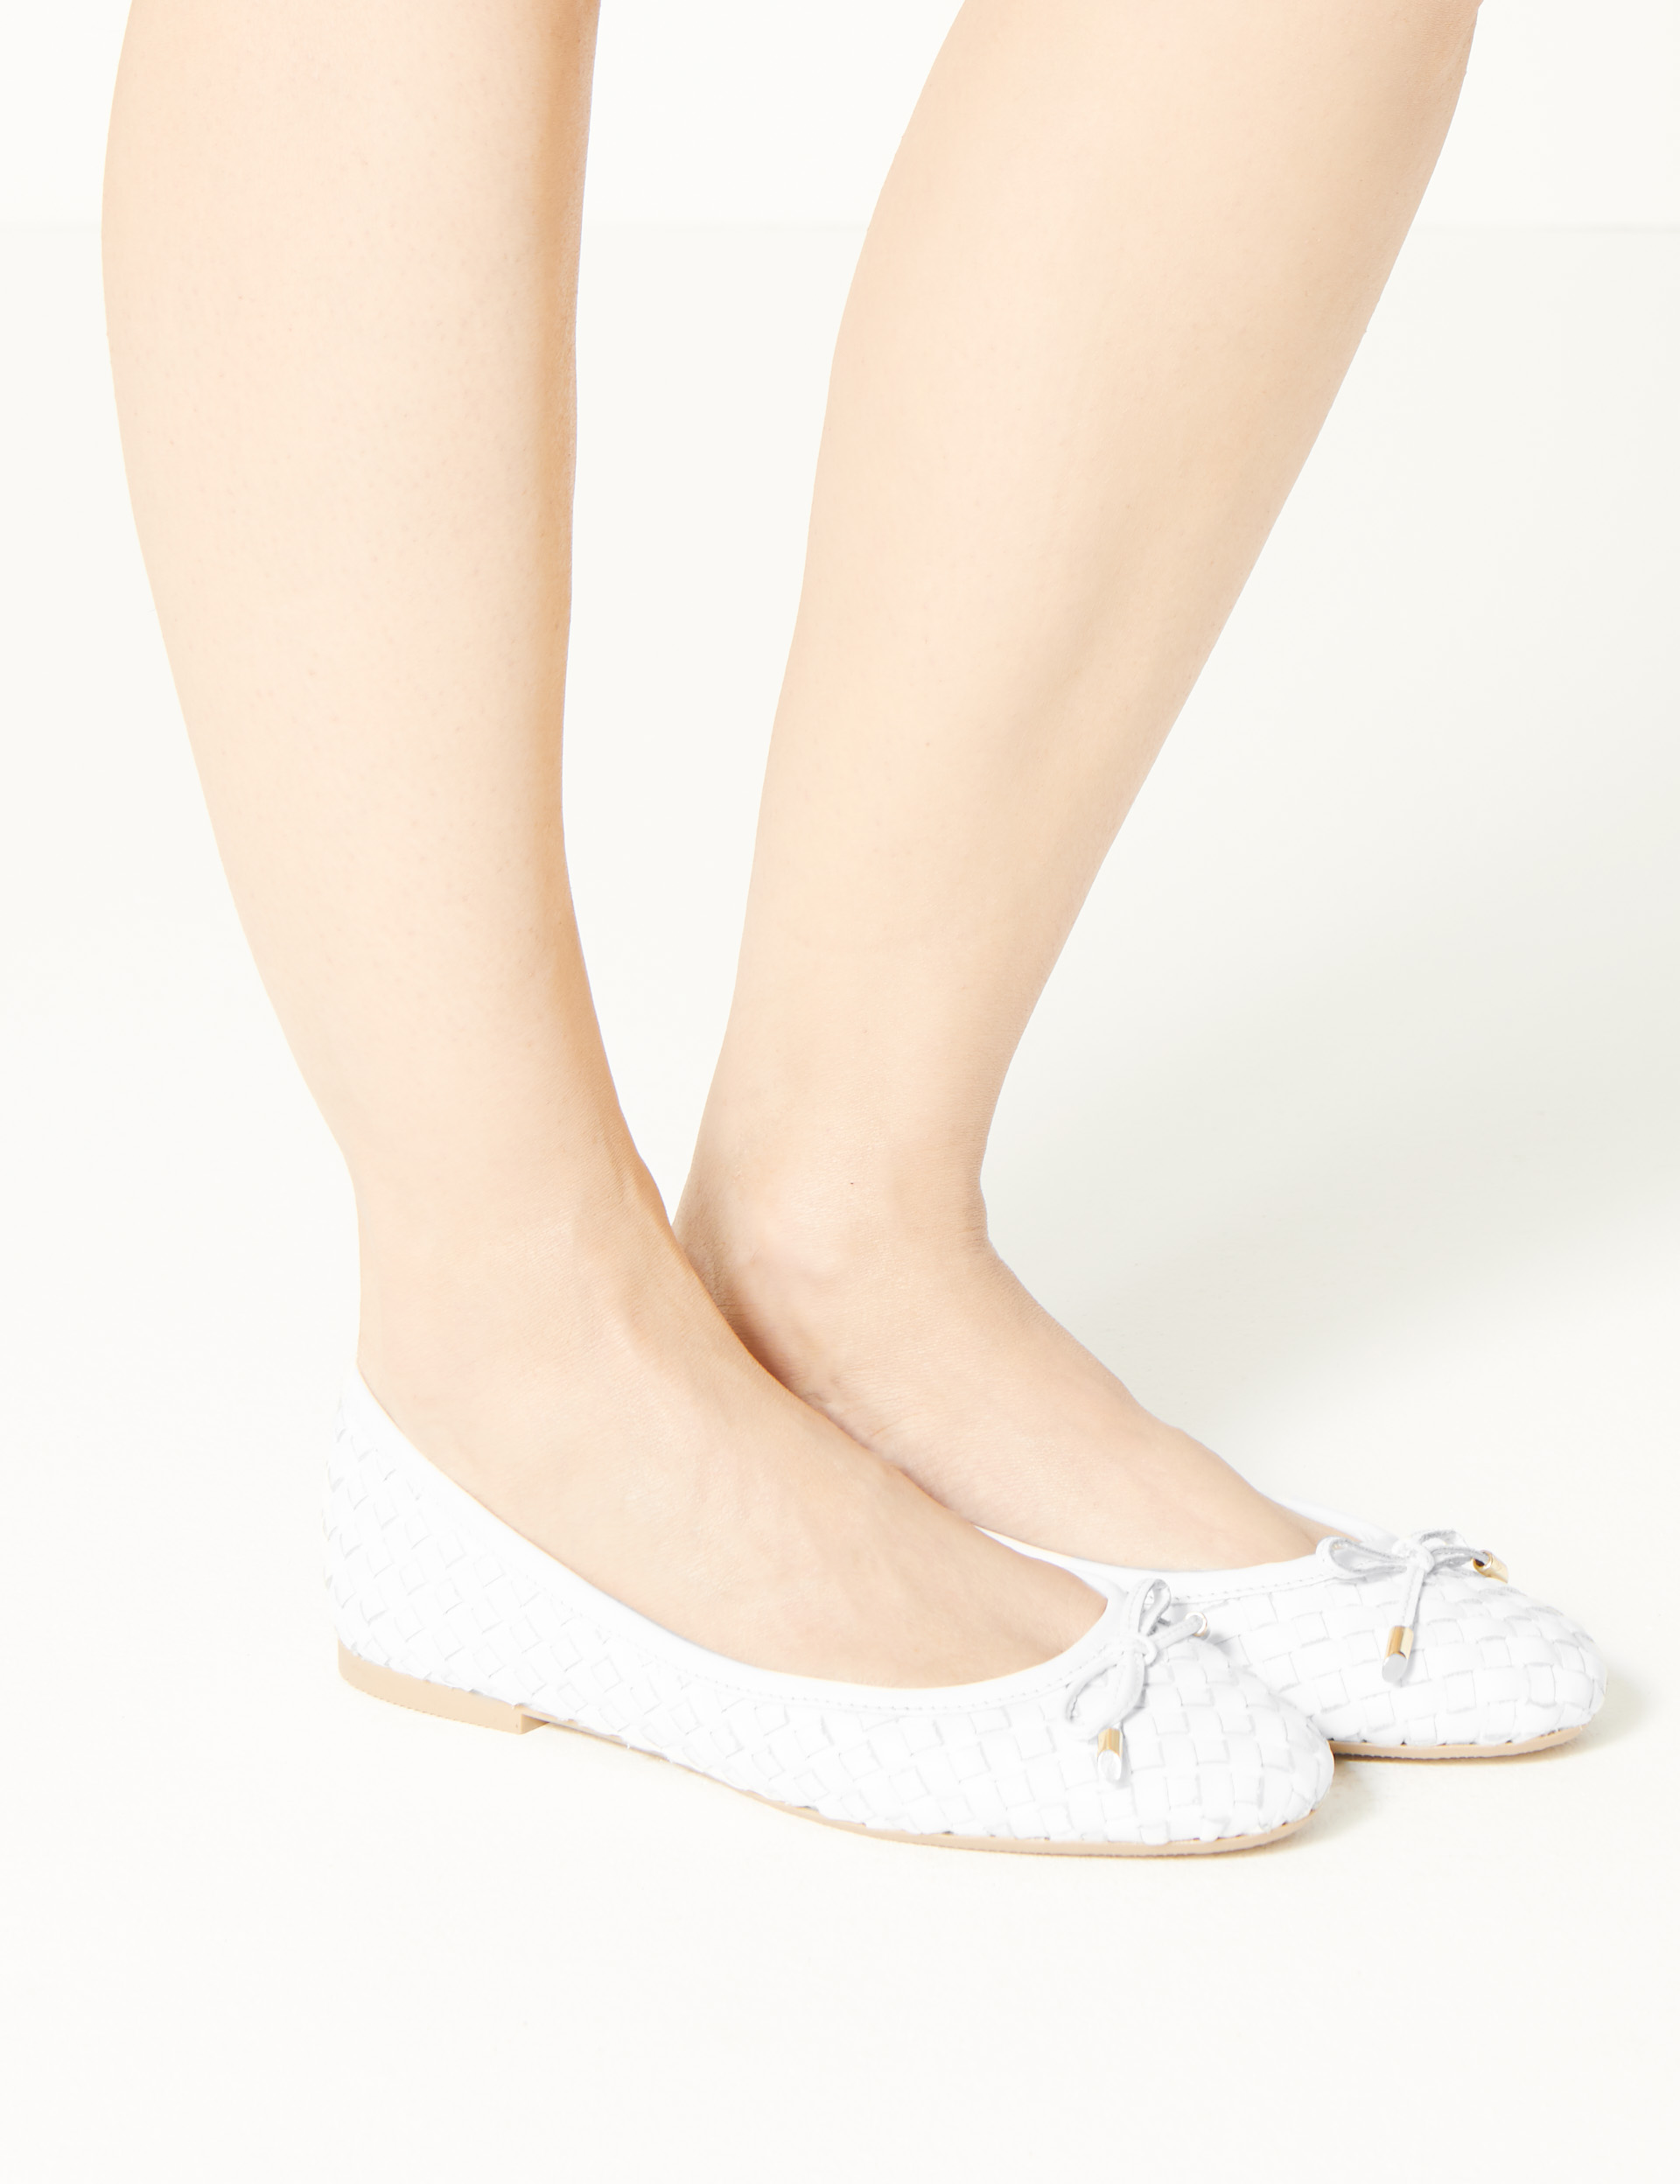 m&s ballet shoes